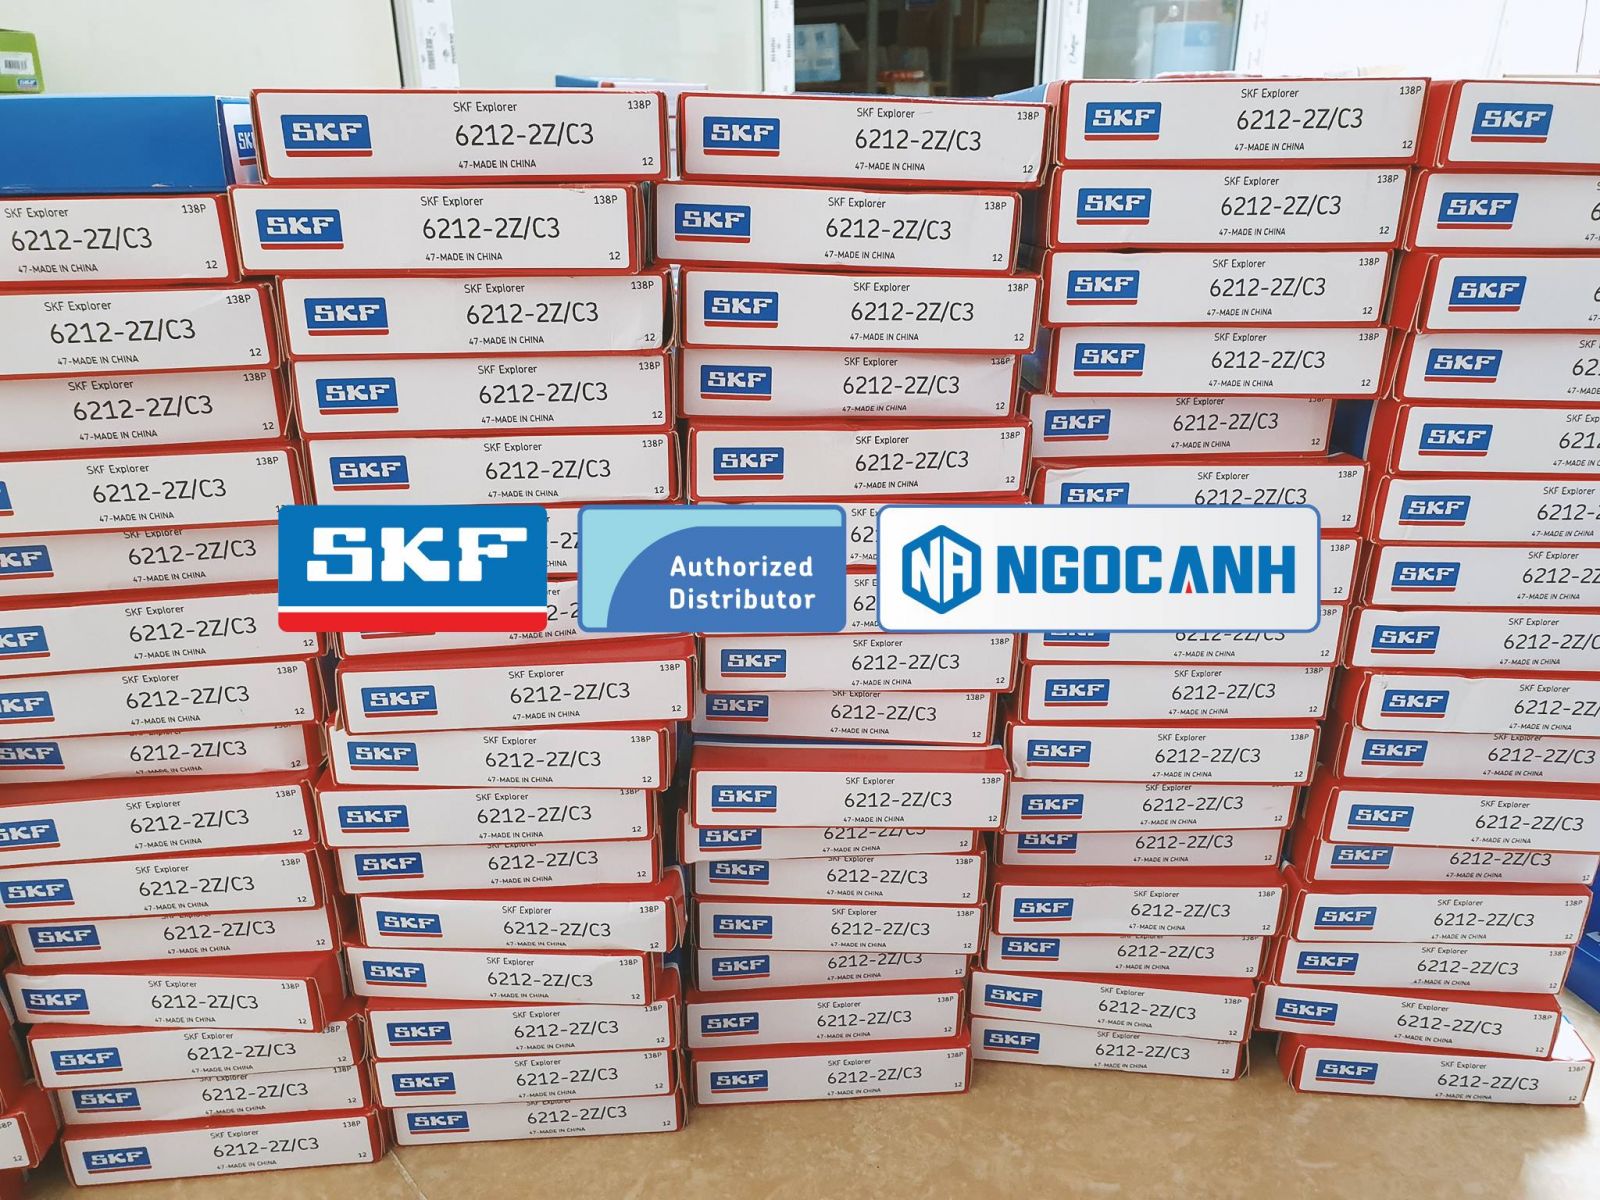 vòng bi SKF chính hãng được bán tại Đại lý Ngọc Anh SKF